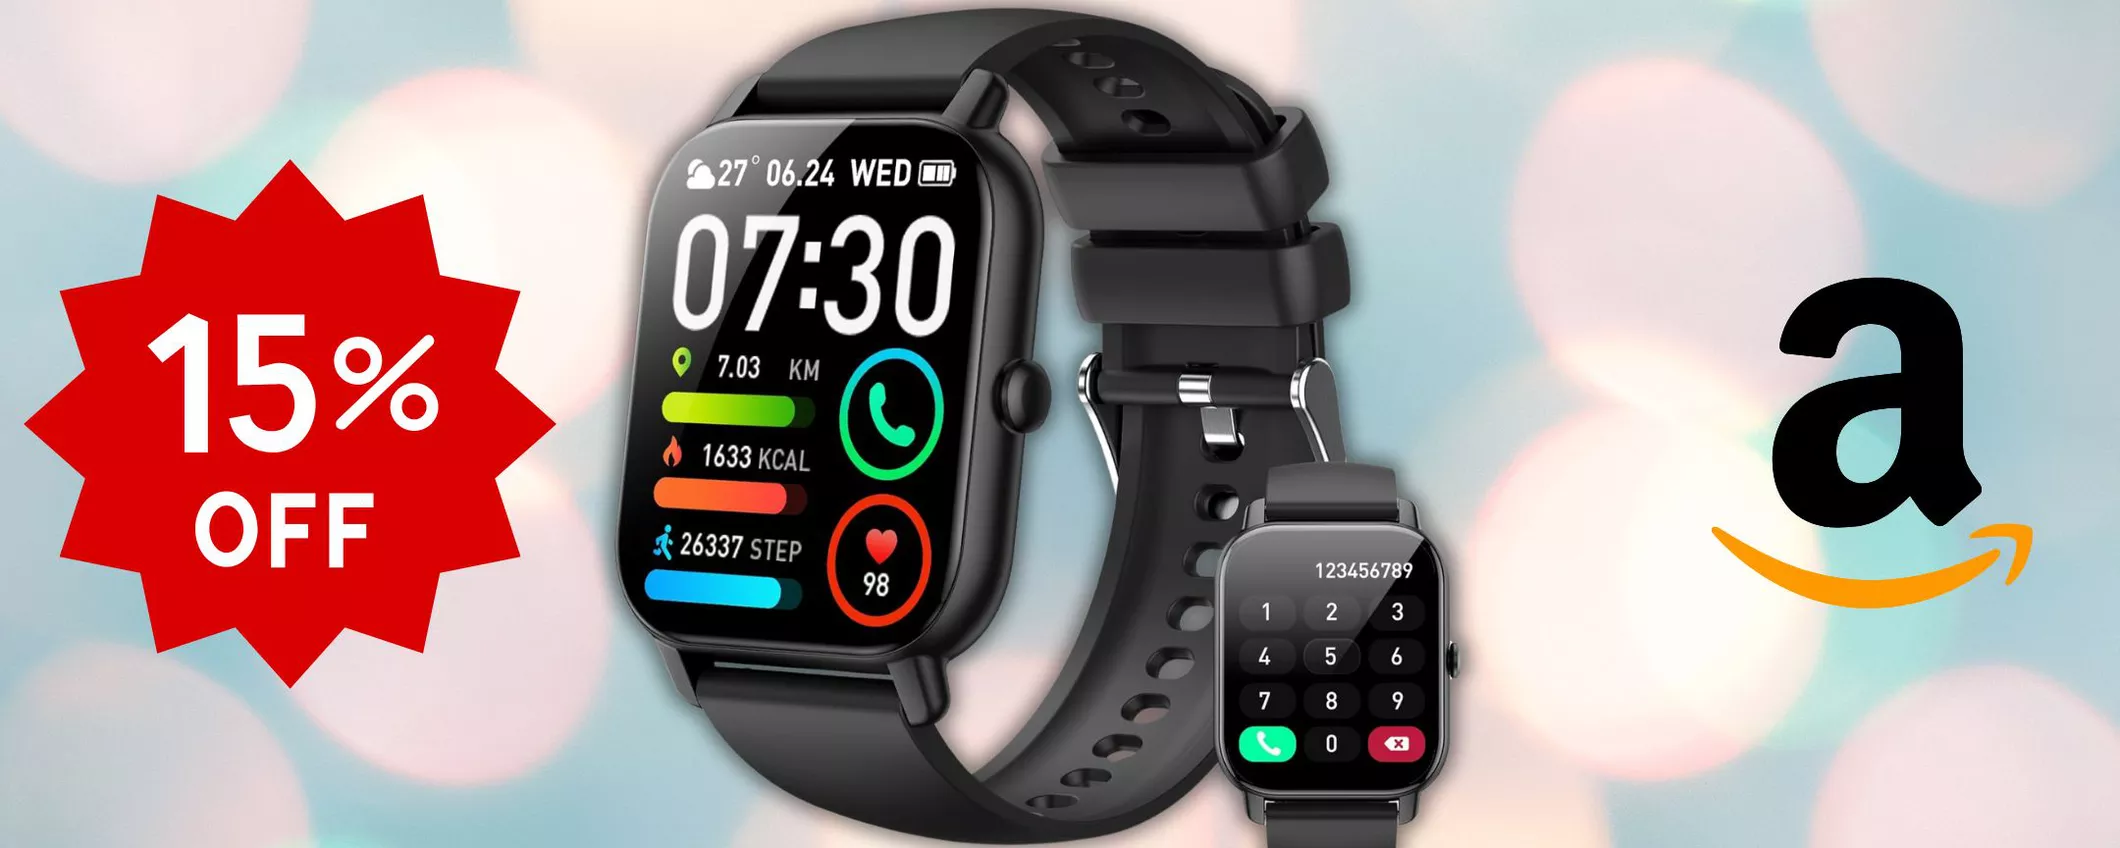 Smartwatch multifunzione: COUPON disponibile su Amazon ancora per POCO